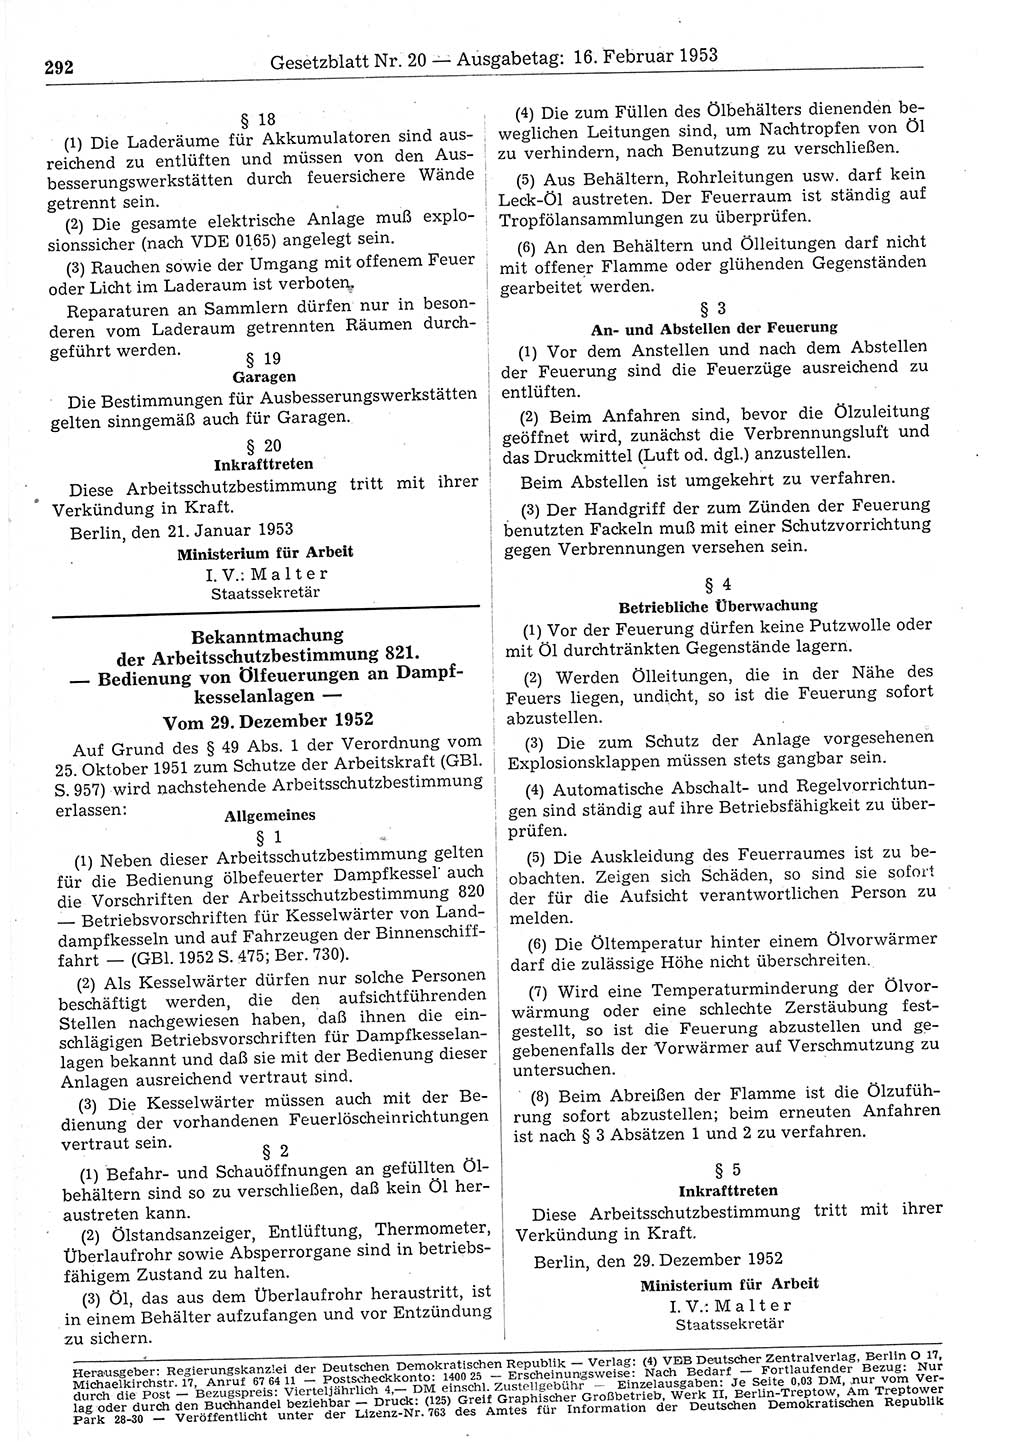 Gesetzblatt (GBl.) der Deutschen Demokratischen Republik (DDR) 1953, Seite 292 (GBl. DDR 1953, S. 292)